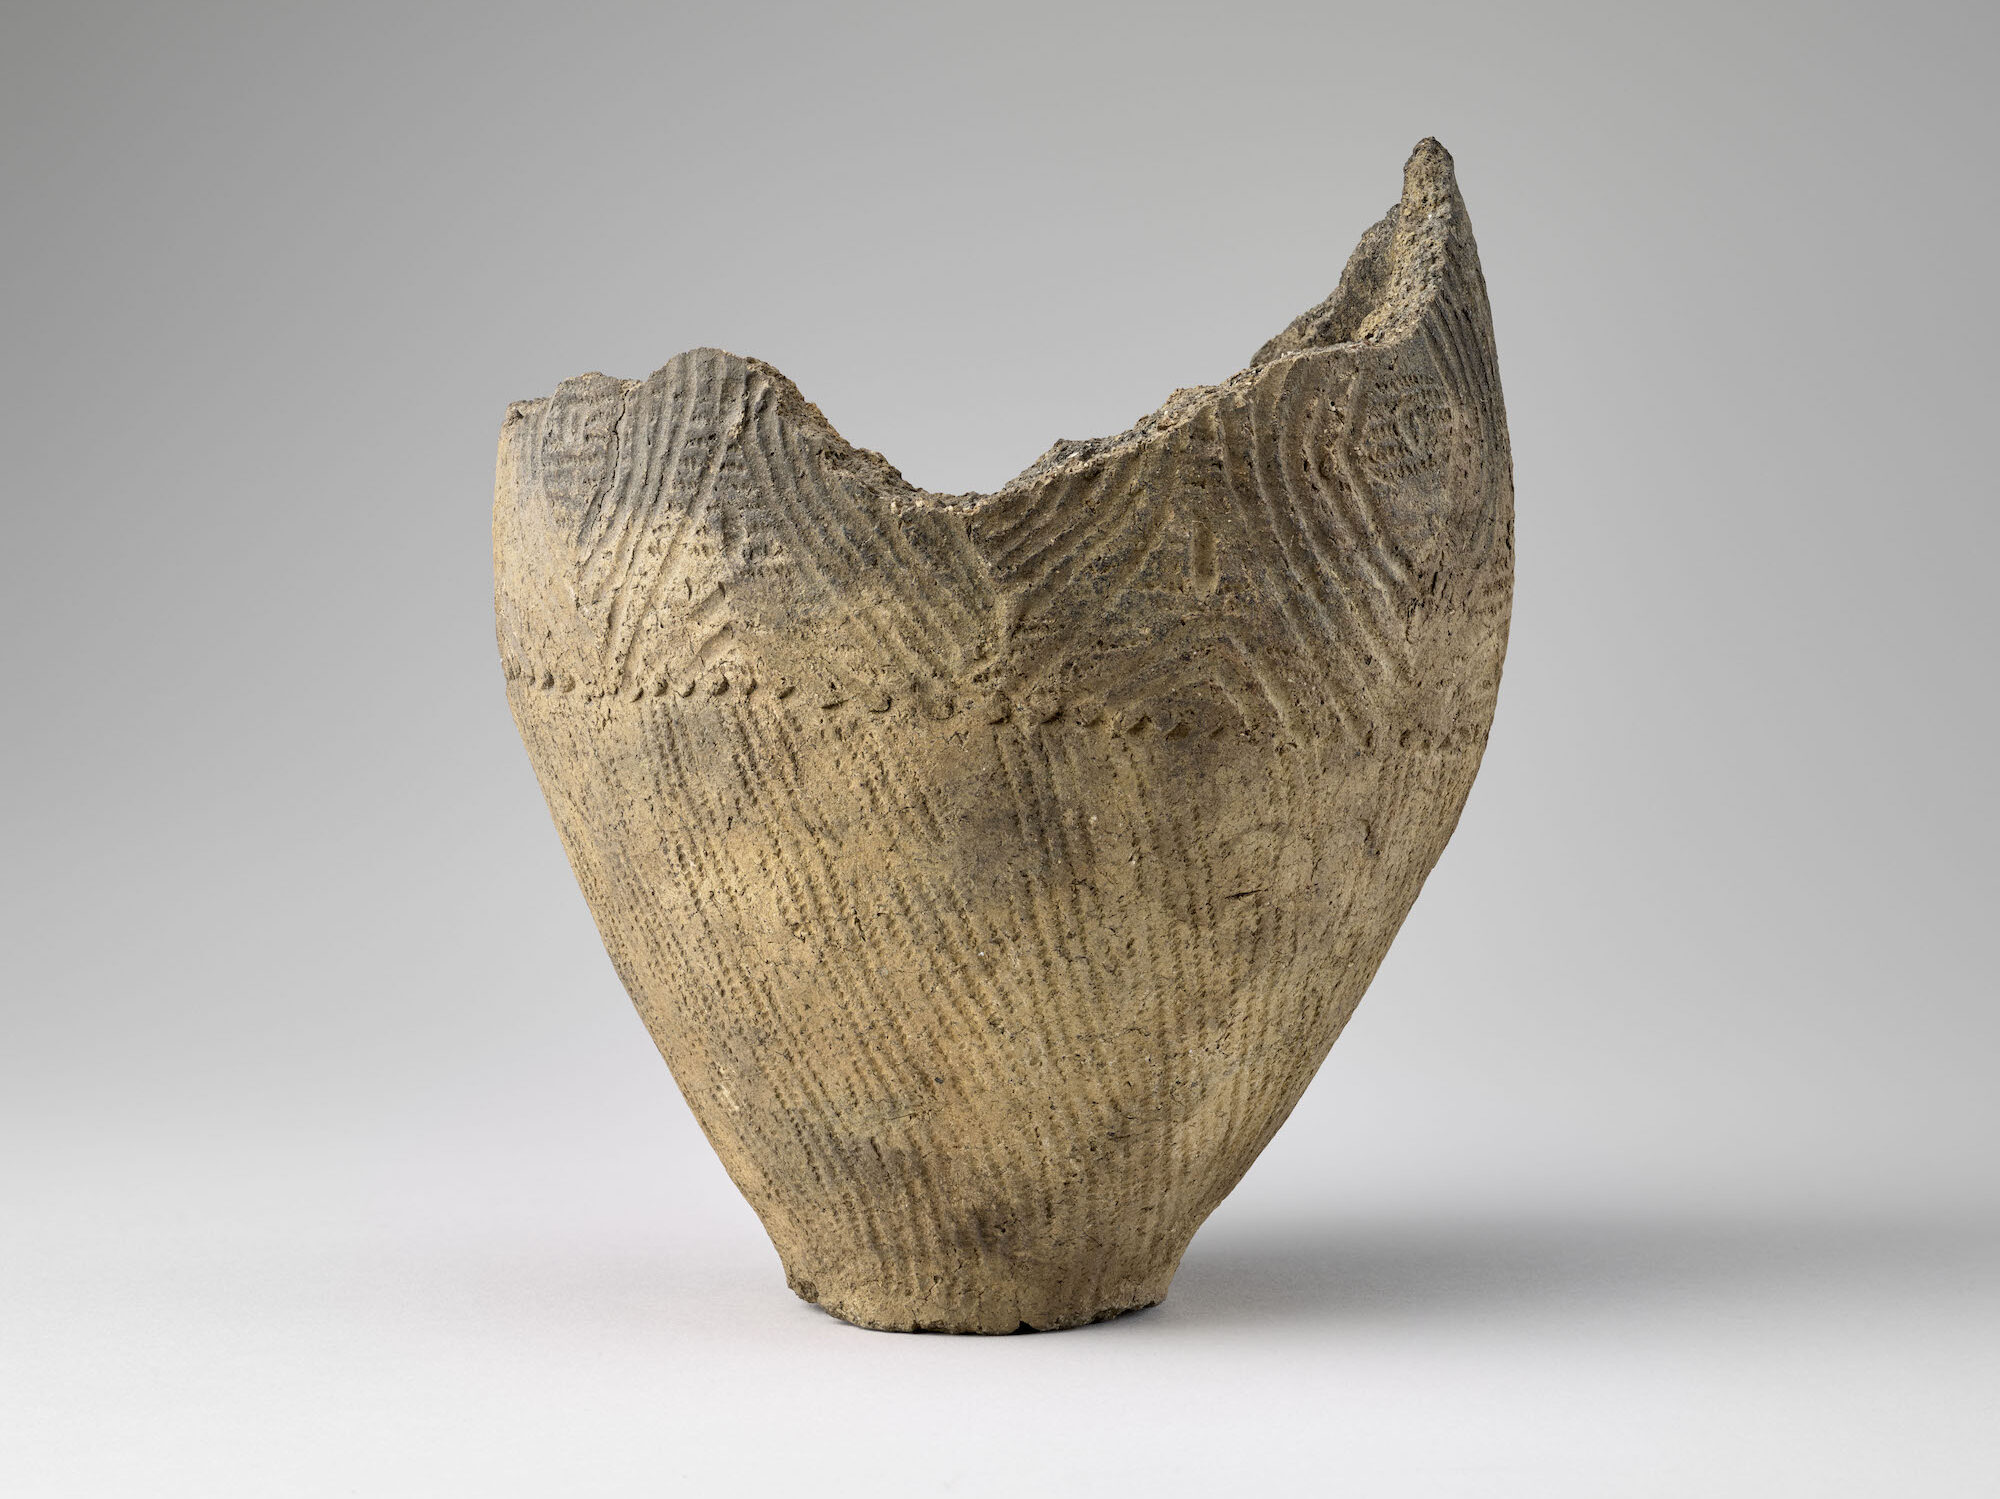 Vase de la période Jômon (néolithique japonais). Paris, musée national des Arts asiatiques–Guimet. © RMN-Grand Palais (MNAAG, Paris), Mathieu Rabeau